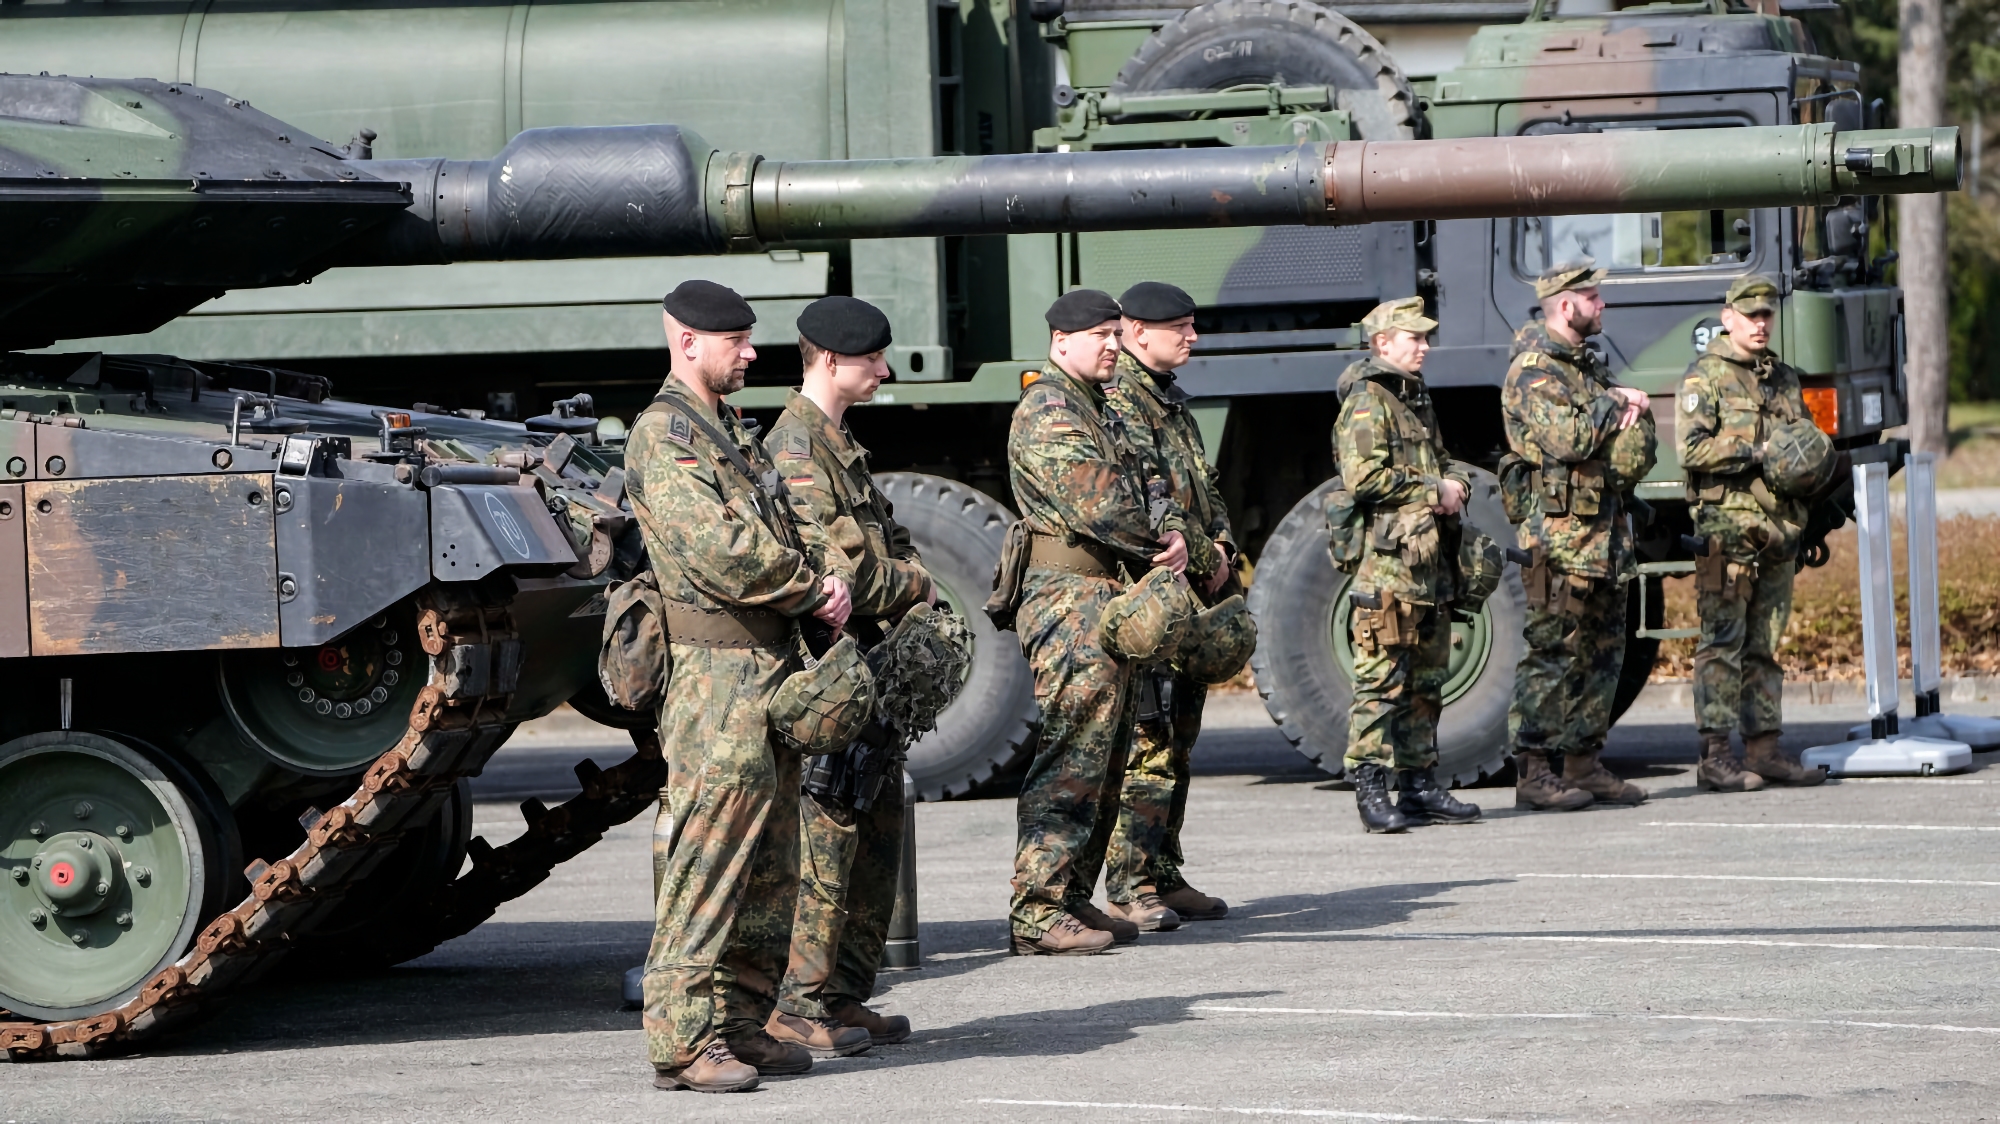 Wyrzutnie rakiet APWKS, ciągnik siodłowy Oshkosh M1070, ciężarówki, bezzałogowe statki powietrzne do rozpoznania i zdalnie sterowane pojazdy gąsienicowe: Niemcy przekazują Ukrainie nowy pakiet pomocy wojskowej